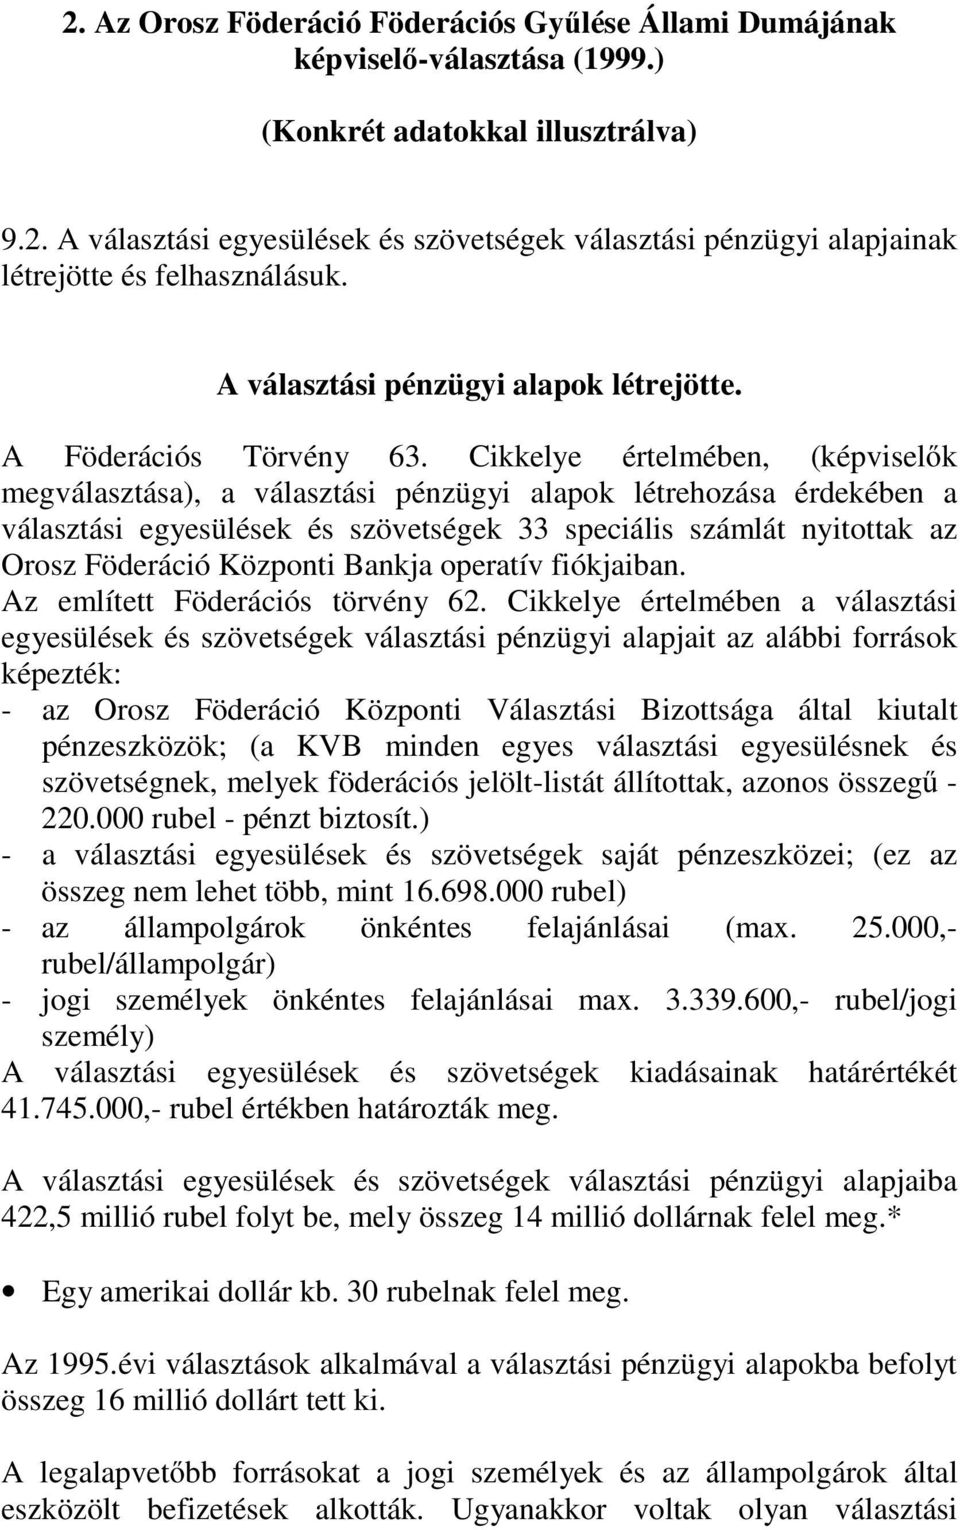 Cikkelye értelmében, (képviselők megválasztása), a választási pénzügyi alapok létrehozása érdekében a választási egyesülések és szövetségek 33 speciális számlát nyitottak az Orosz Föderáció Központi